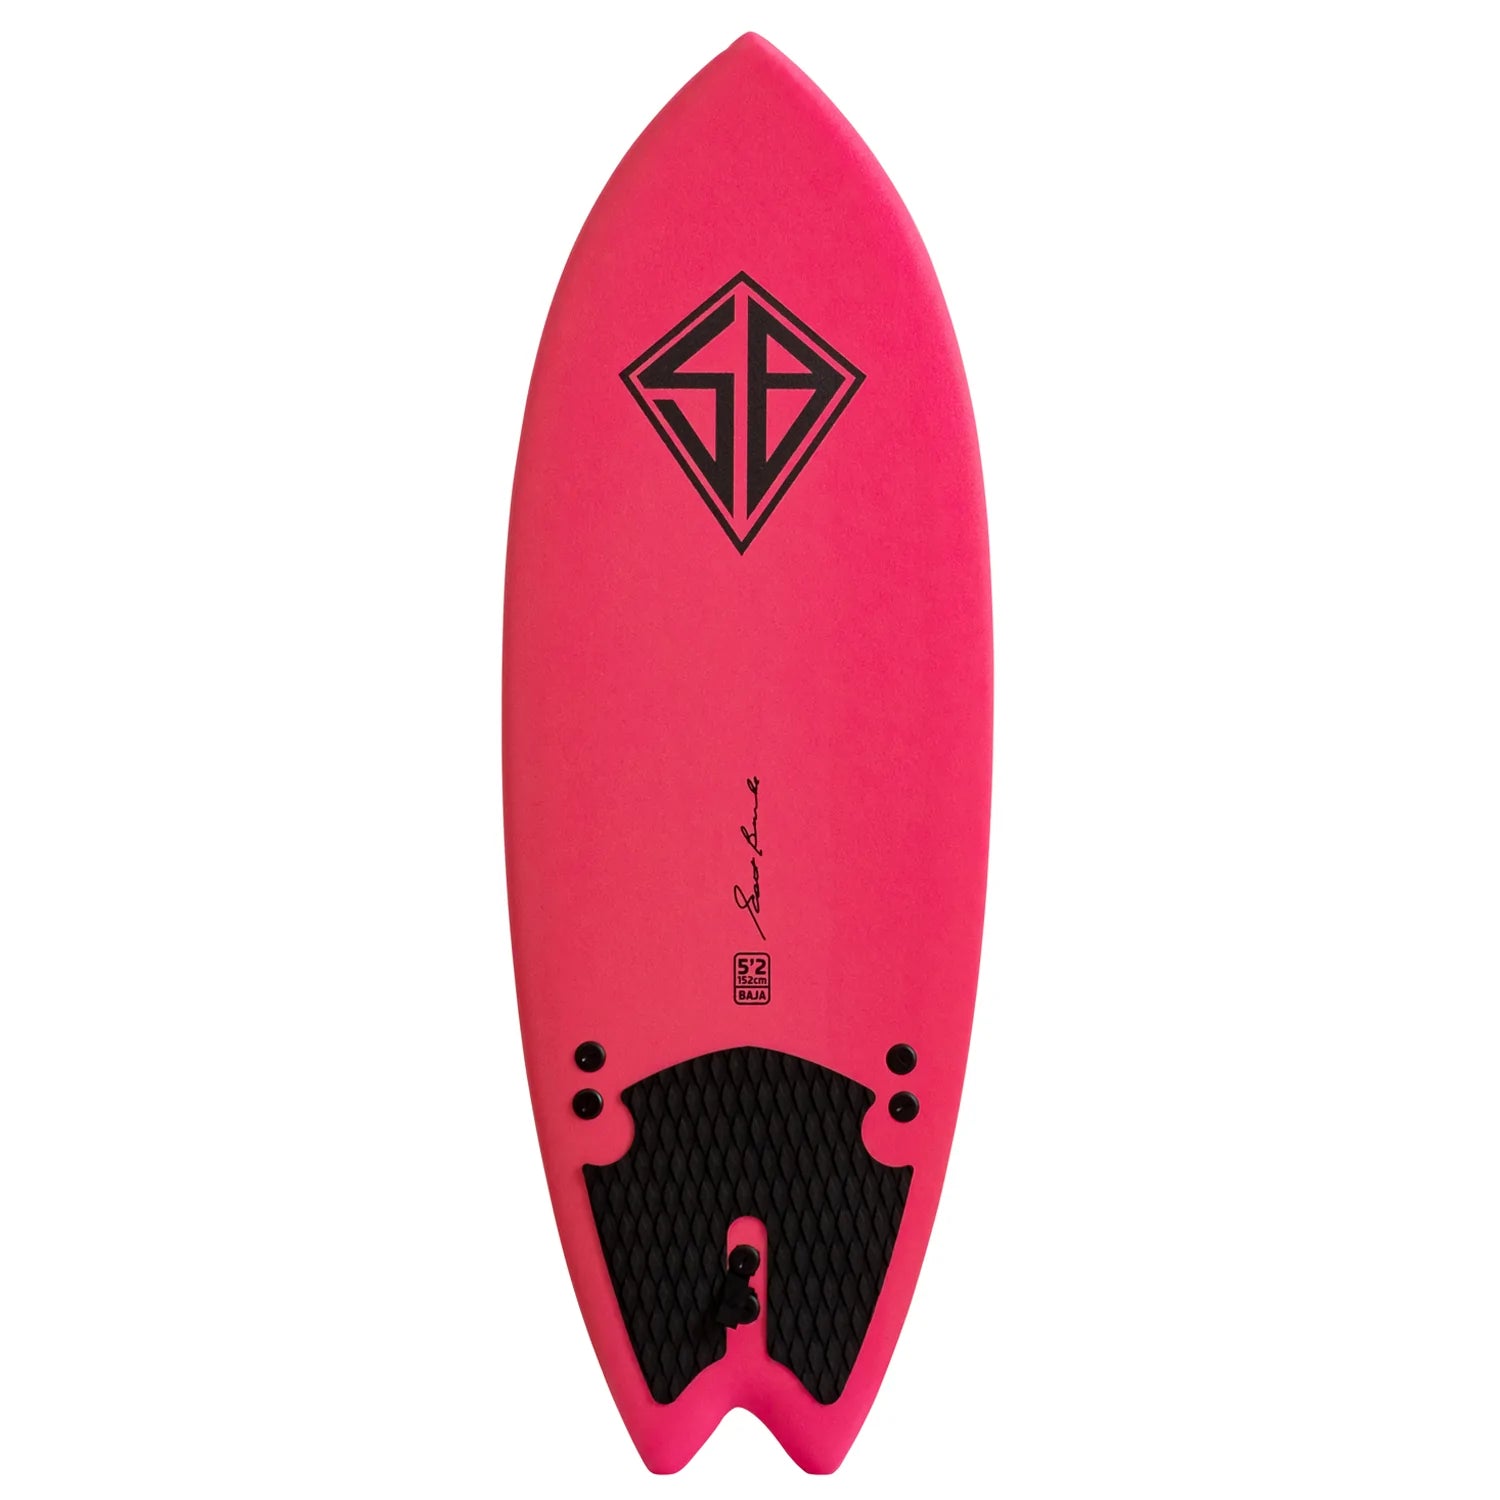 CBC - Planche de surf en mousse - Softboard - 5'2 Baja Fish - Pink / Rainbow Slick